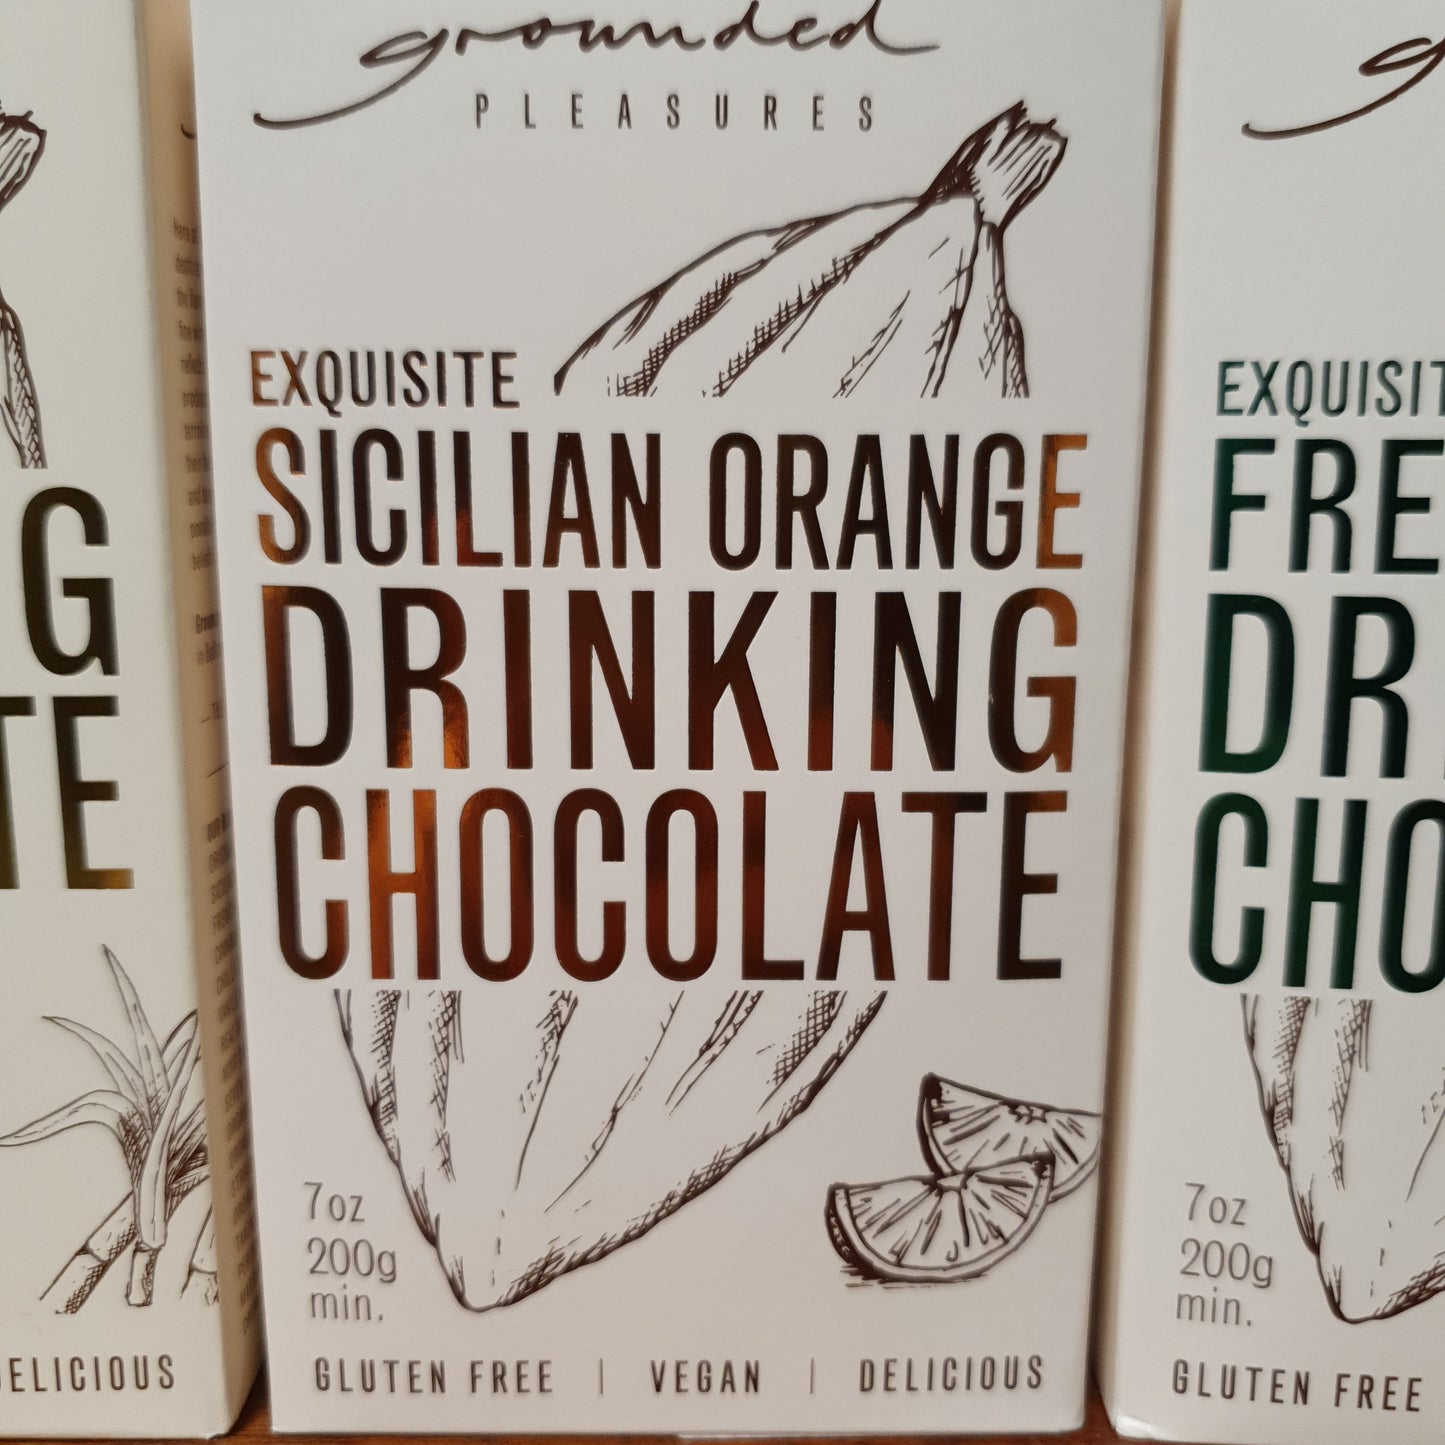 Exquisite Sicilian Orange Drinking Chocolate